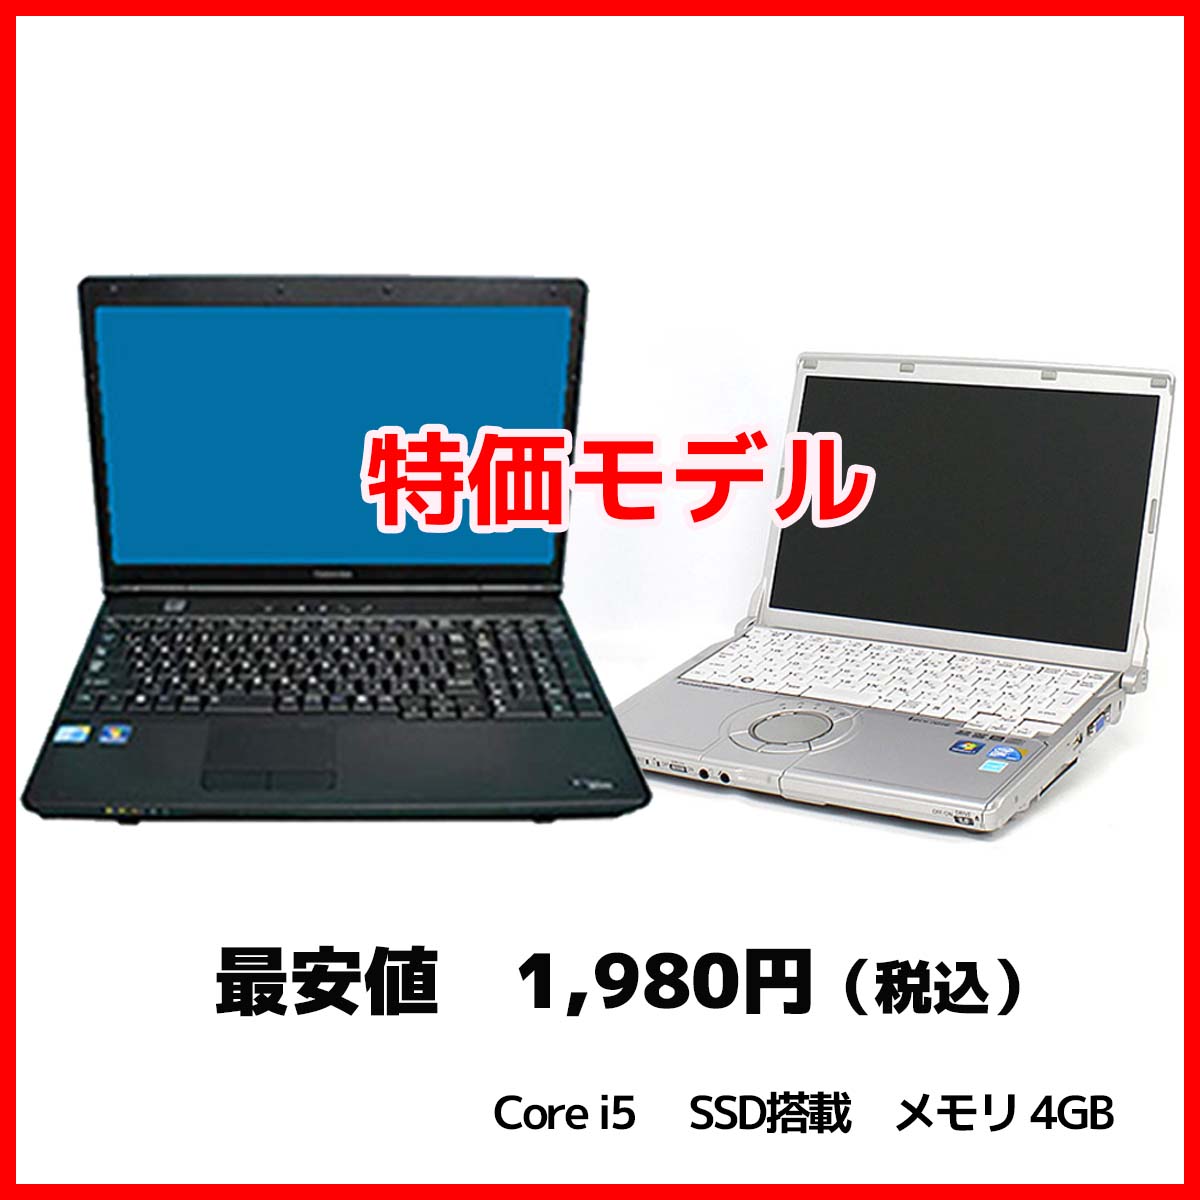 特価モデルパソコン(Win10 Pro, Core i5搭載)